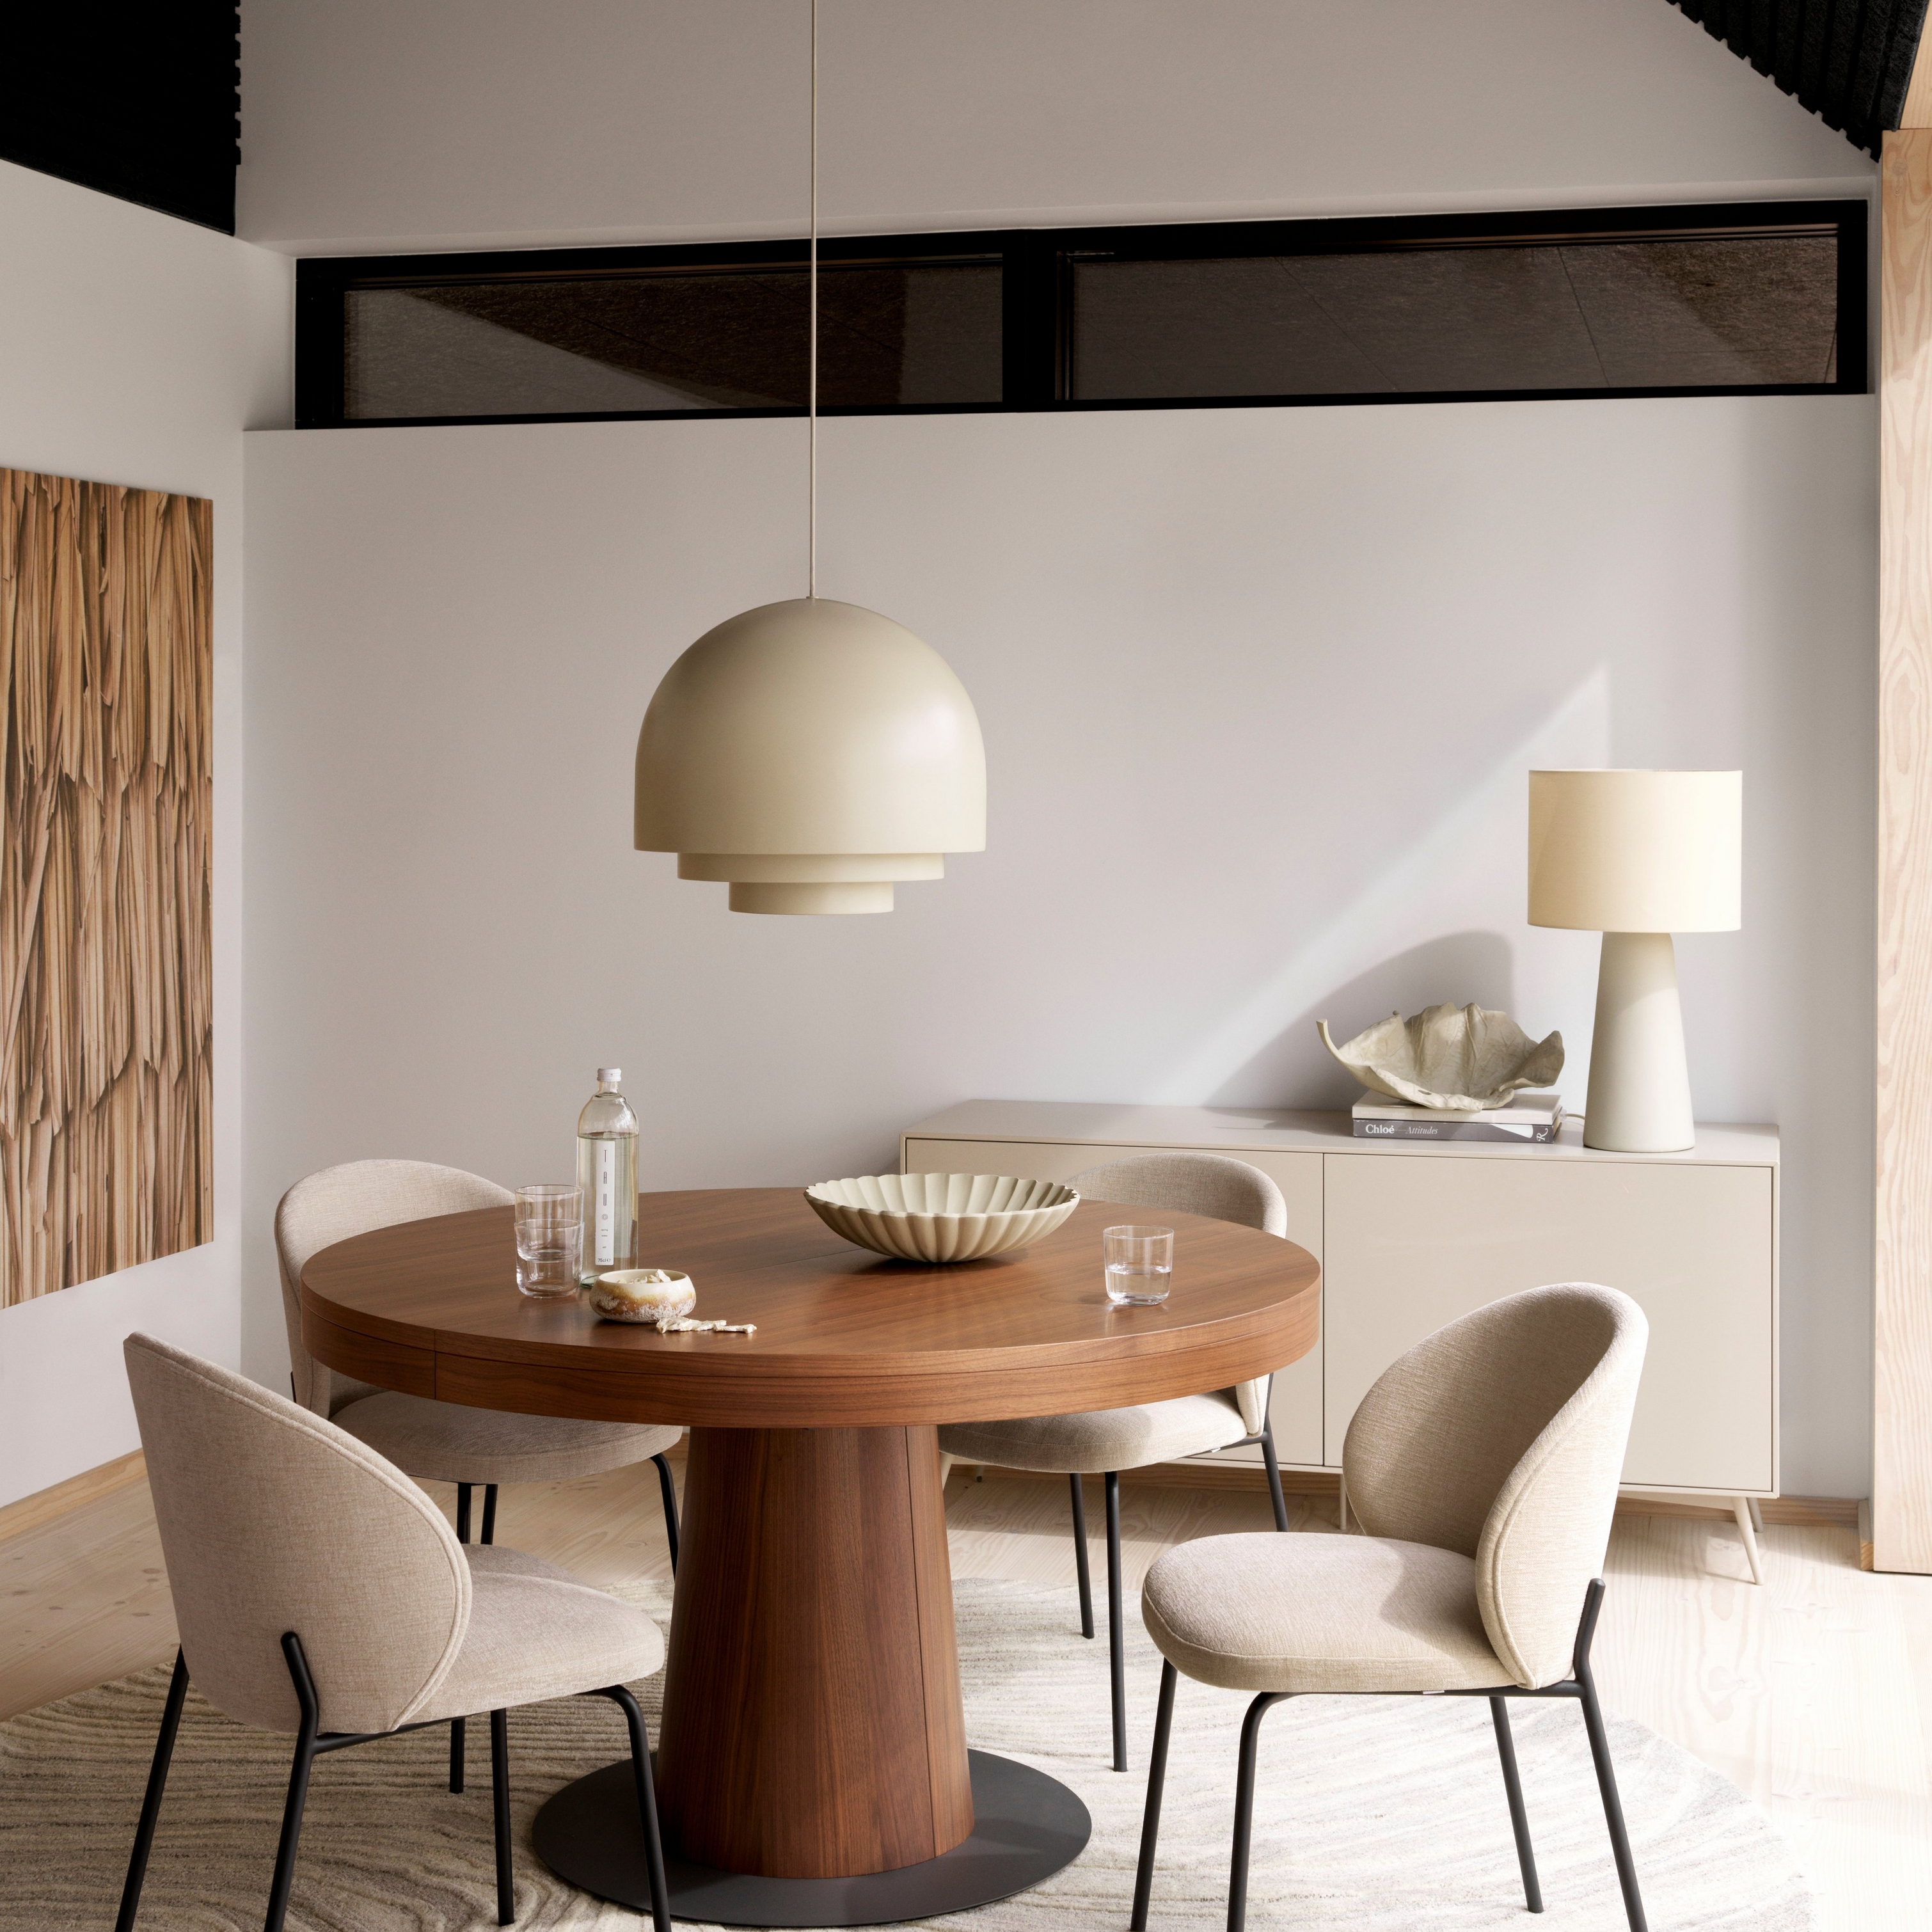 Moderne eetkamer met ronde houten Granada tafel, beige Princeton stoelen, hanglamp en crème tapijt.